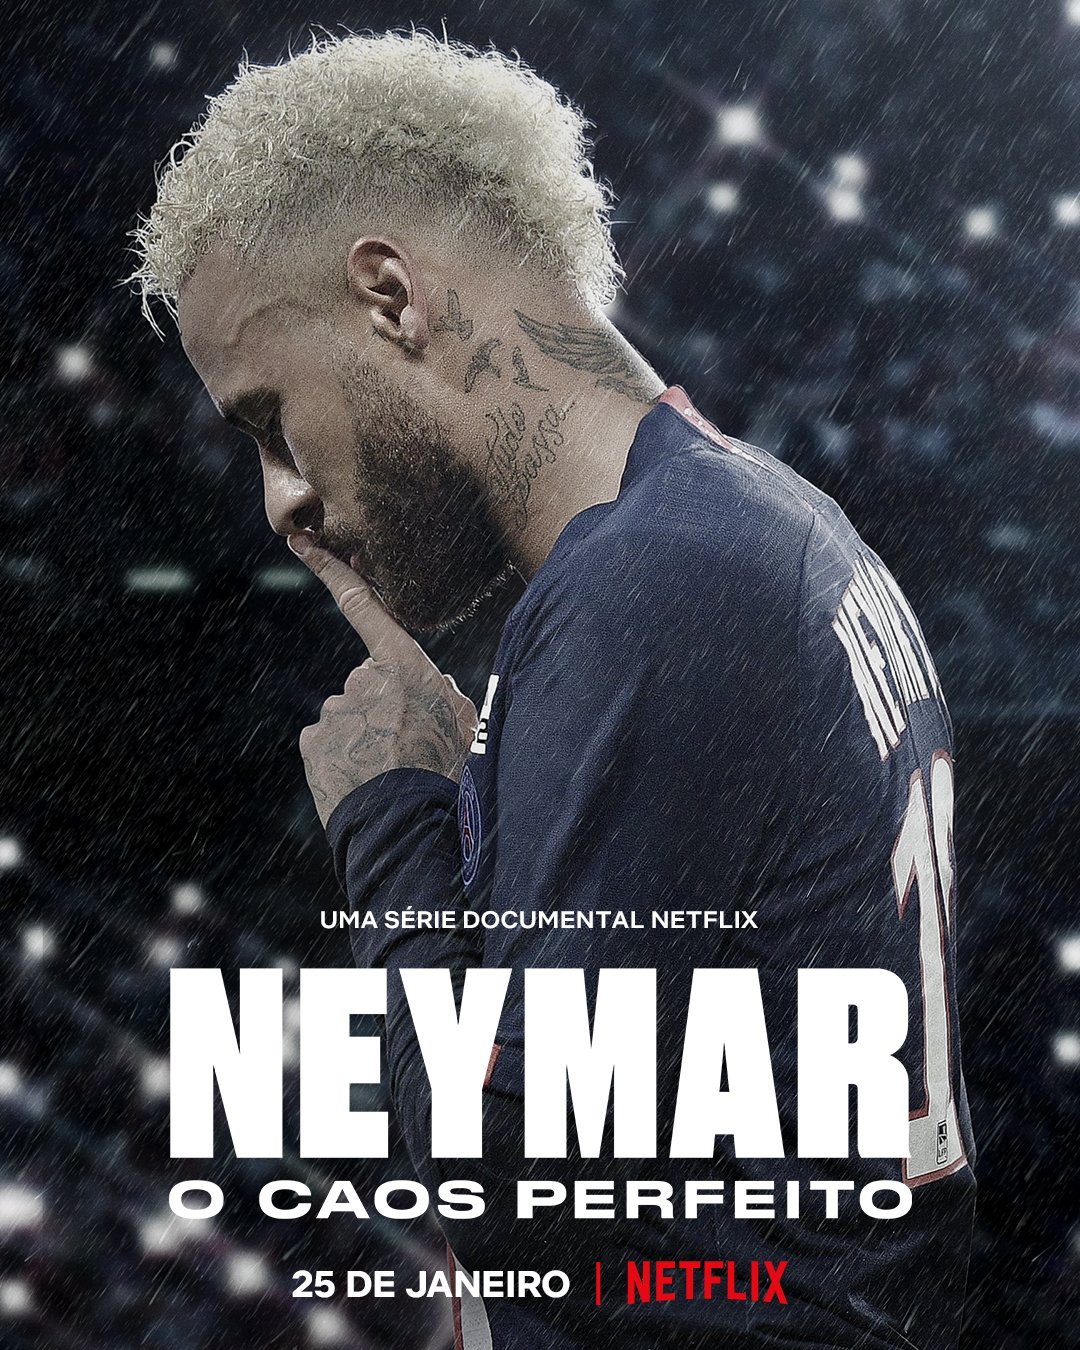 Quantos episódios tem a série de Neymar?